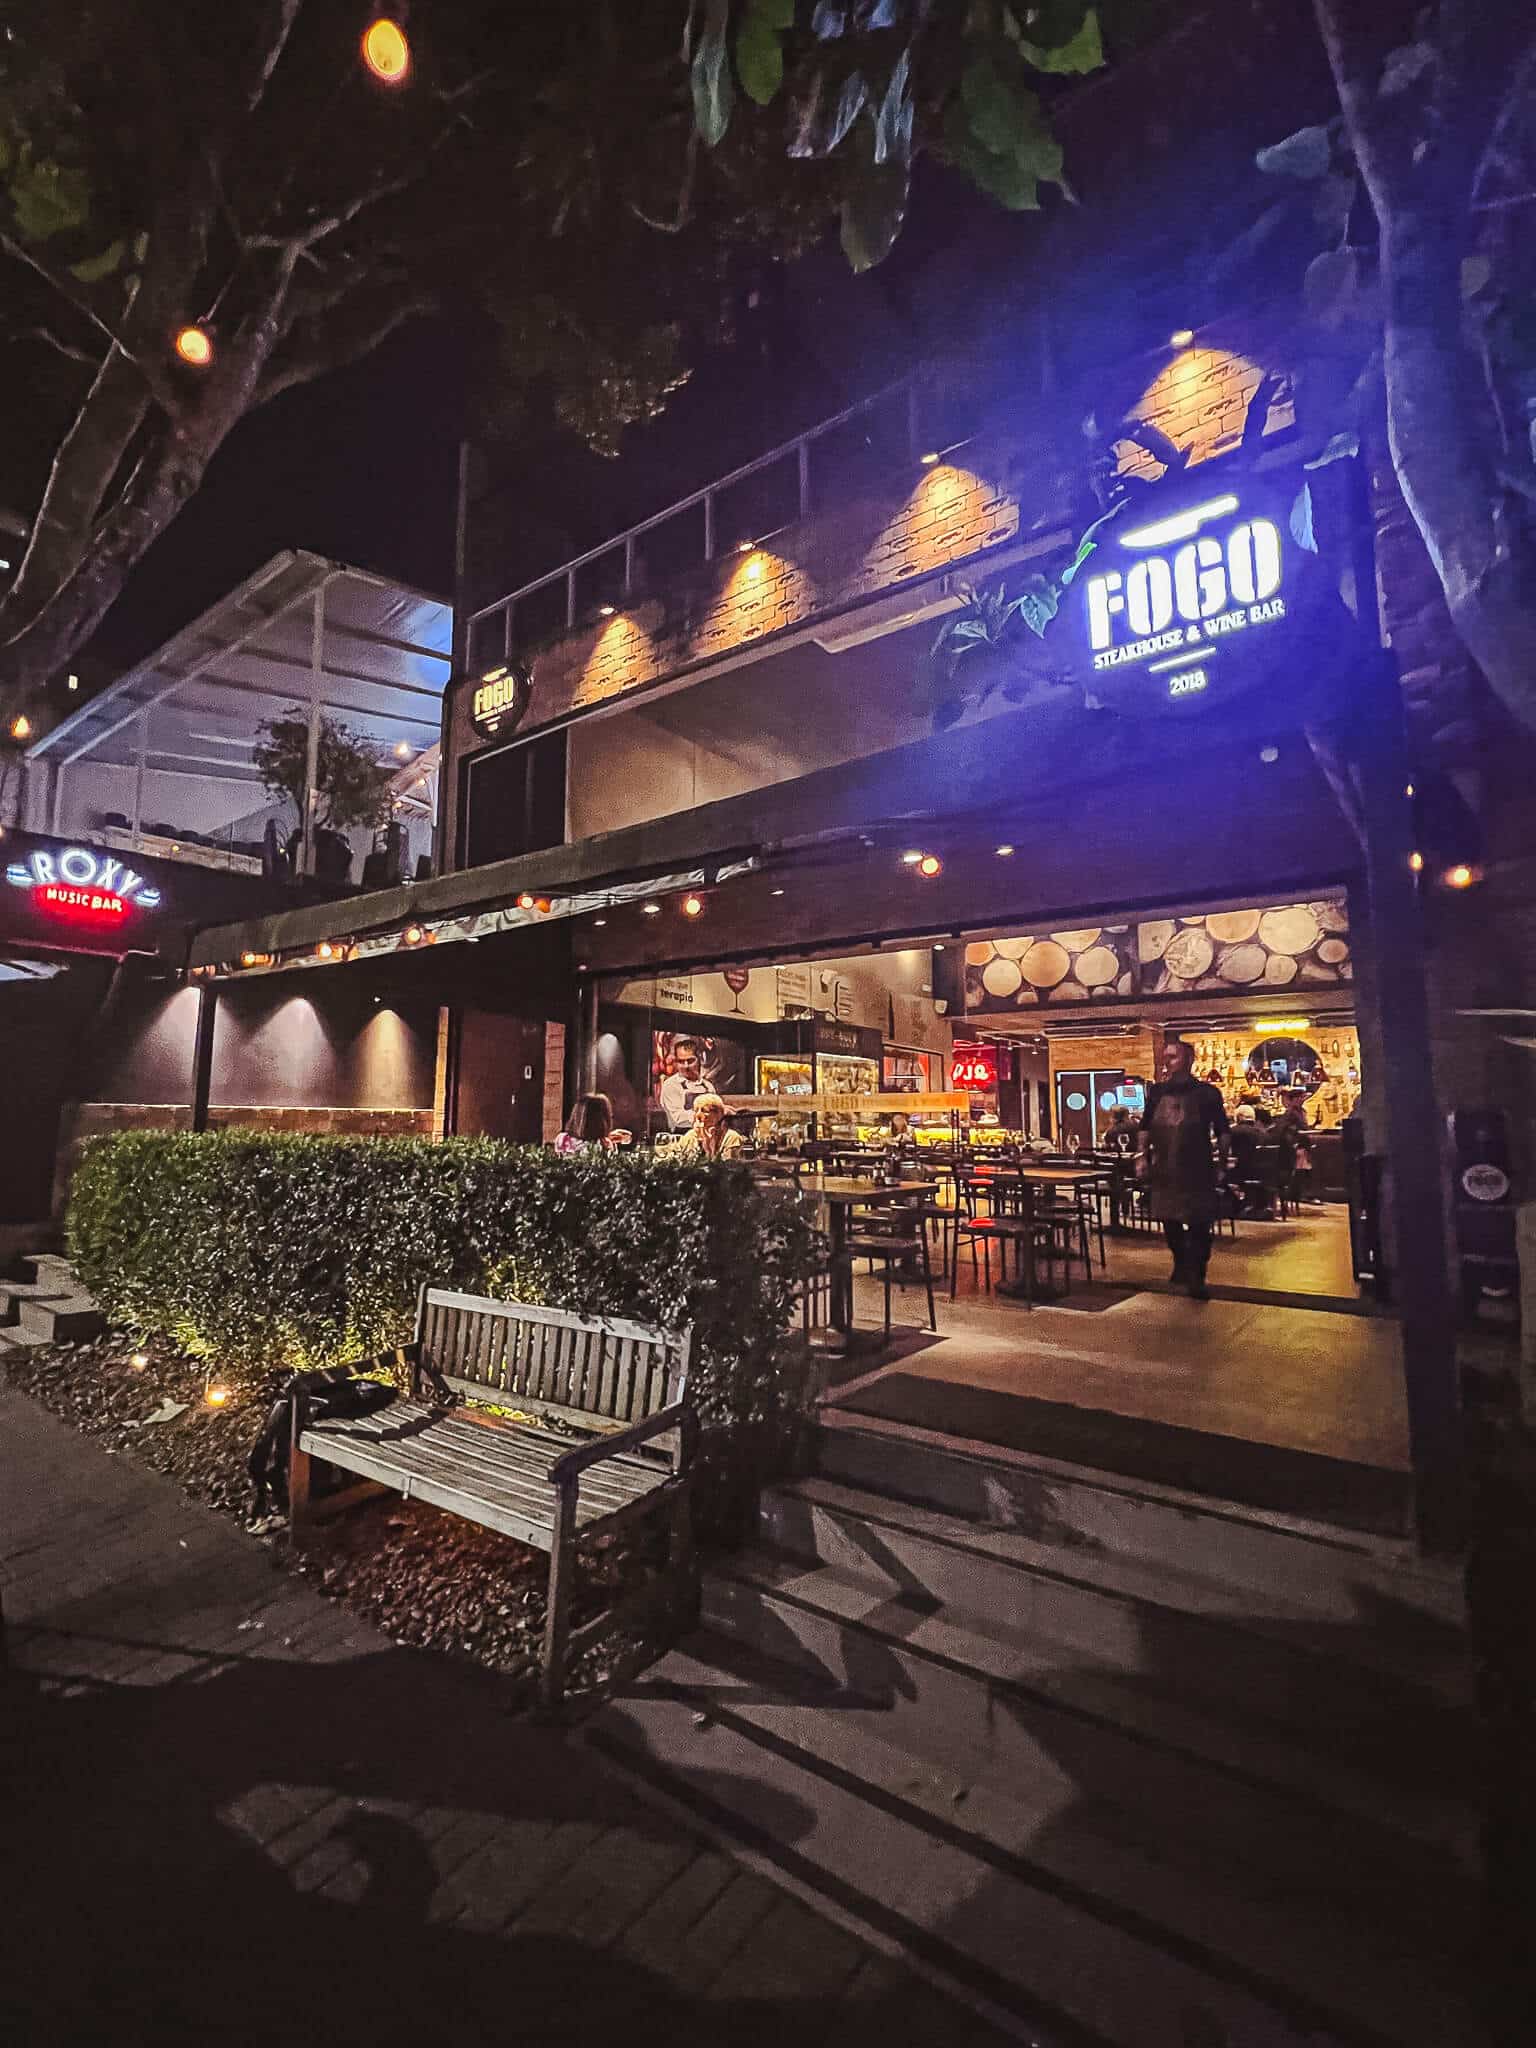 foto mostra a fachada do restaurante fogo steakhouse ao anoitecer, com o logo brilhando e luzes quentes iluminando